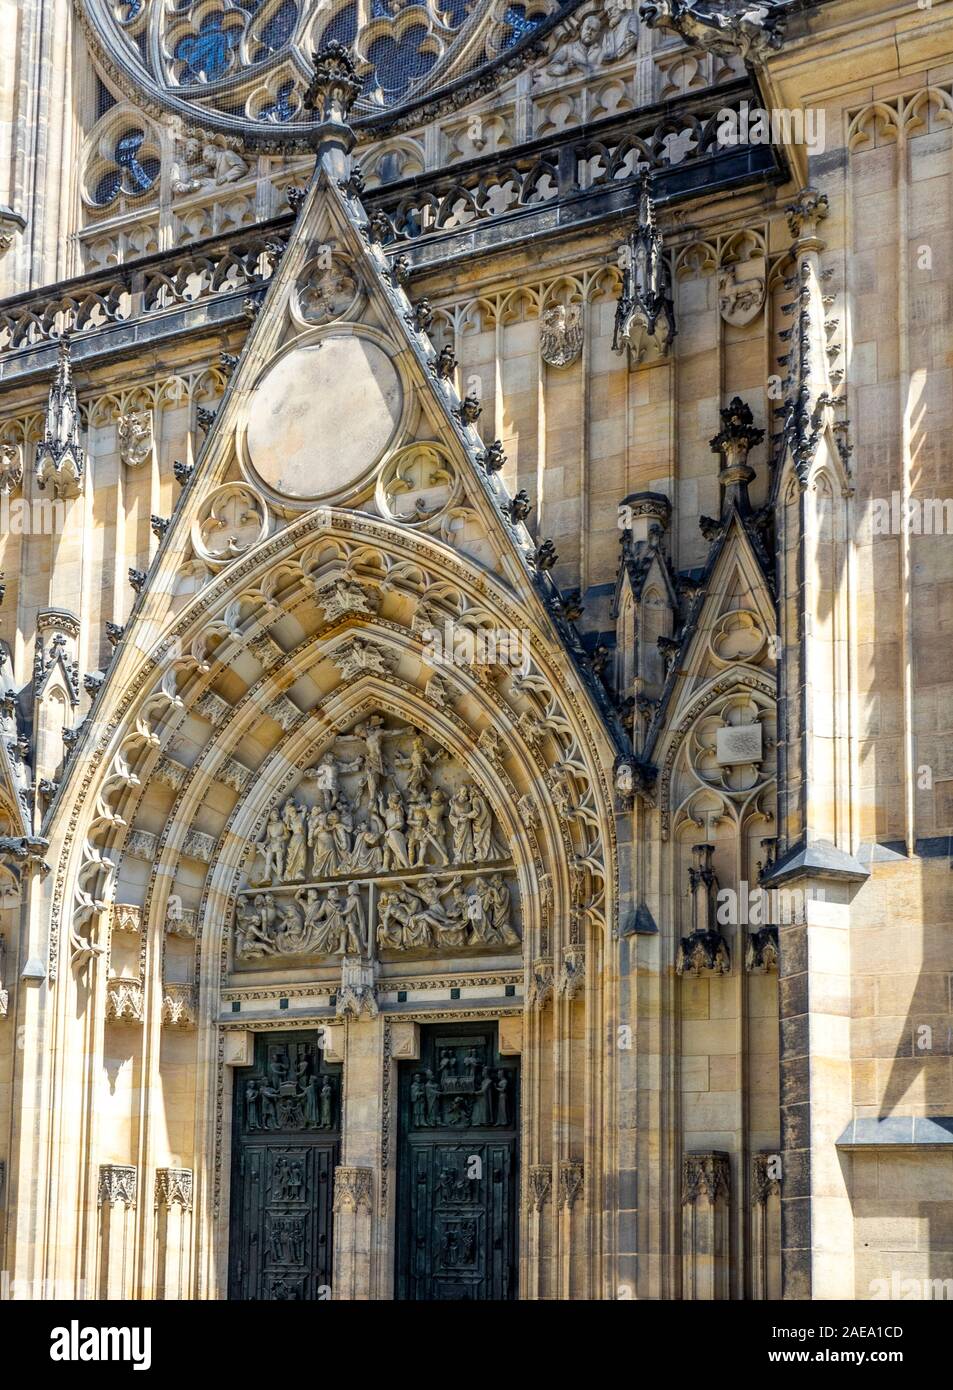 Detail der Sandsteinschnitzereien und Skulpturen über dem zentralen Portal der gotischen St. Veits Kathedrale Prager Burg Komplex Prag Tschechische Republik. Stockfoto